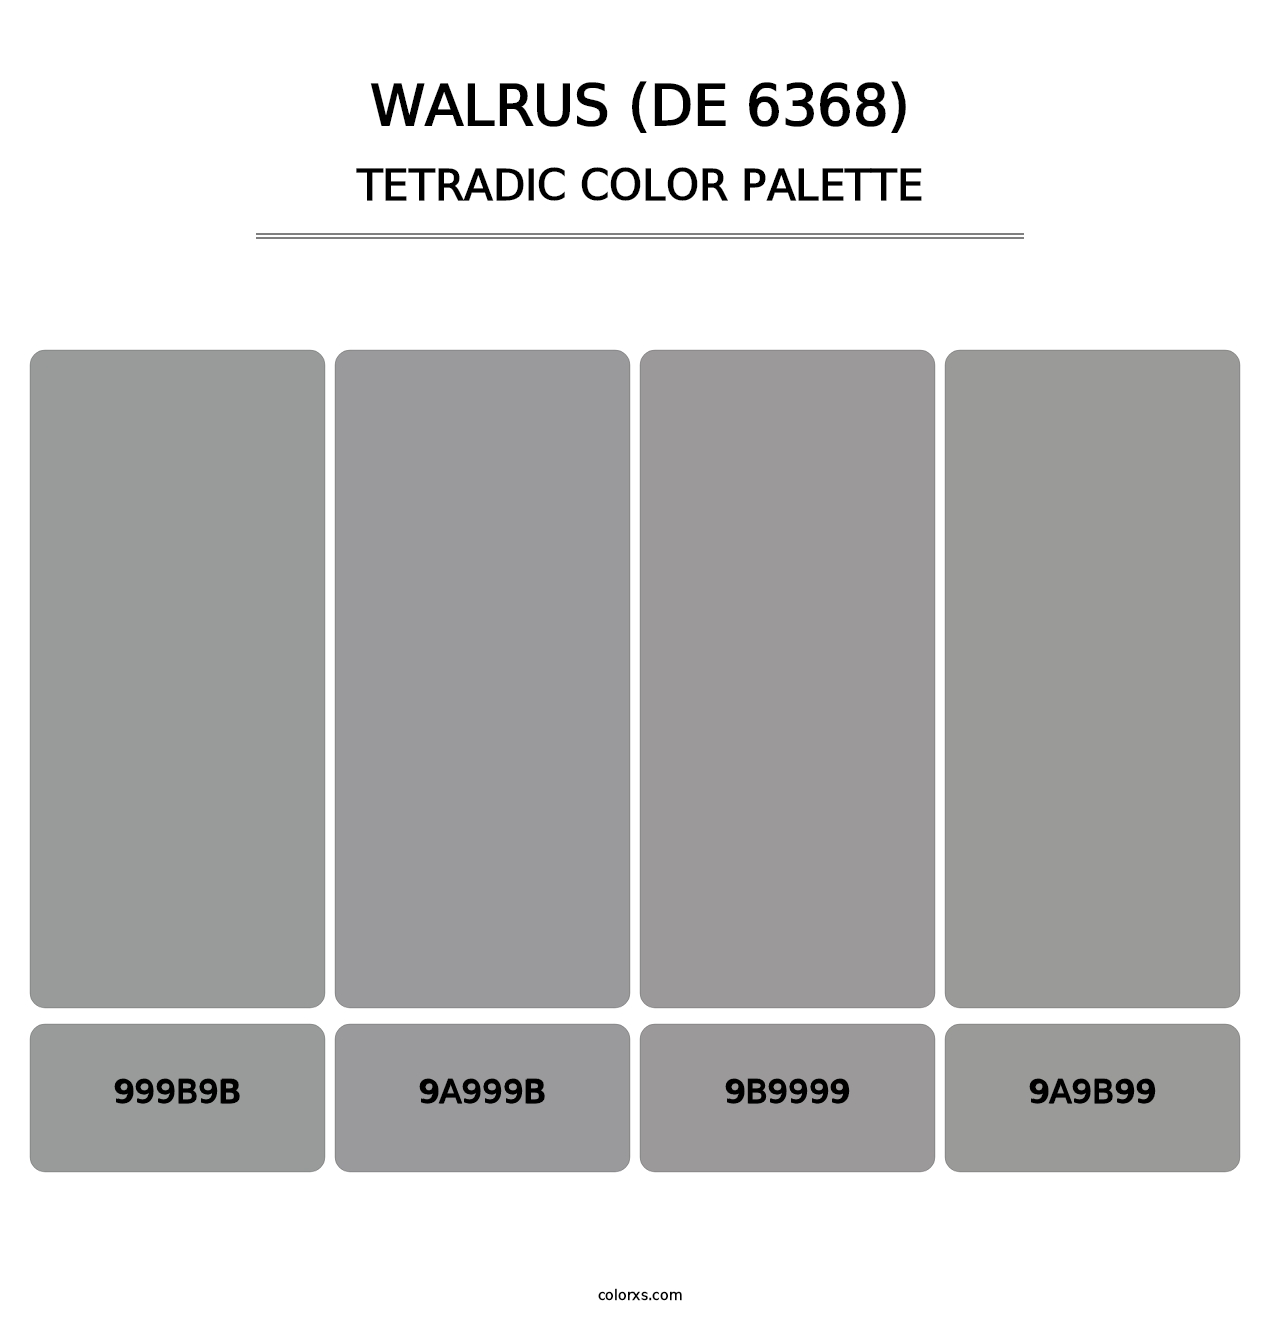 Walrus (DE 6368) - Tetradic Color Palette